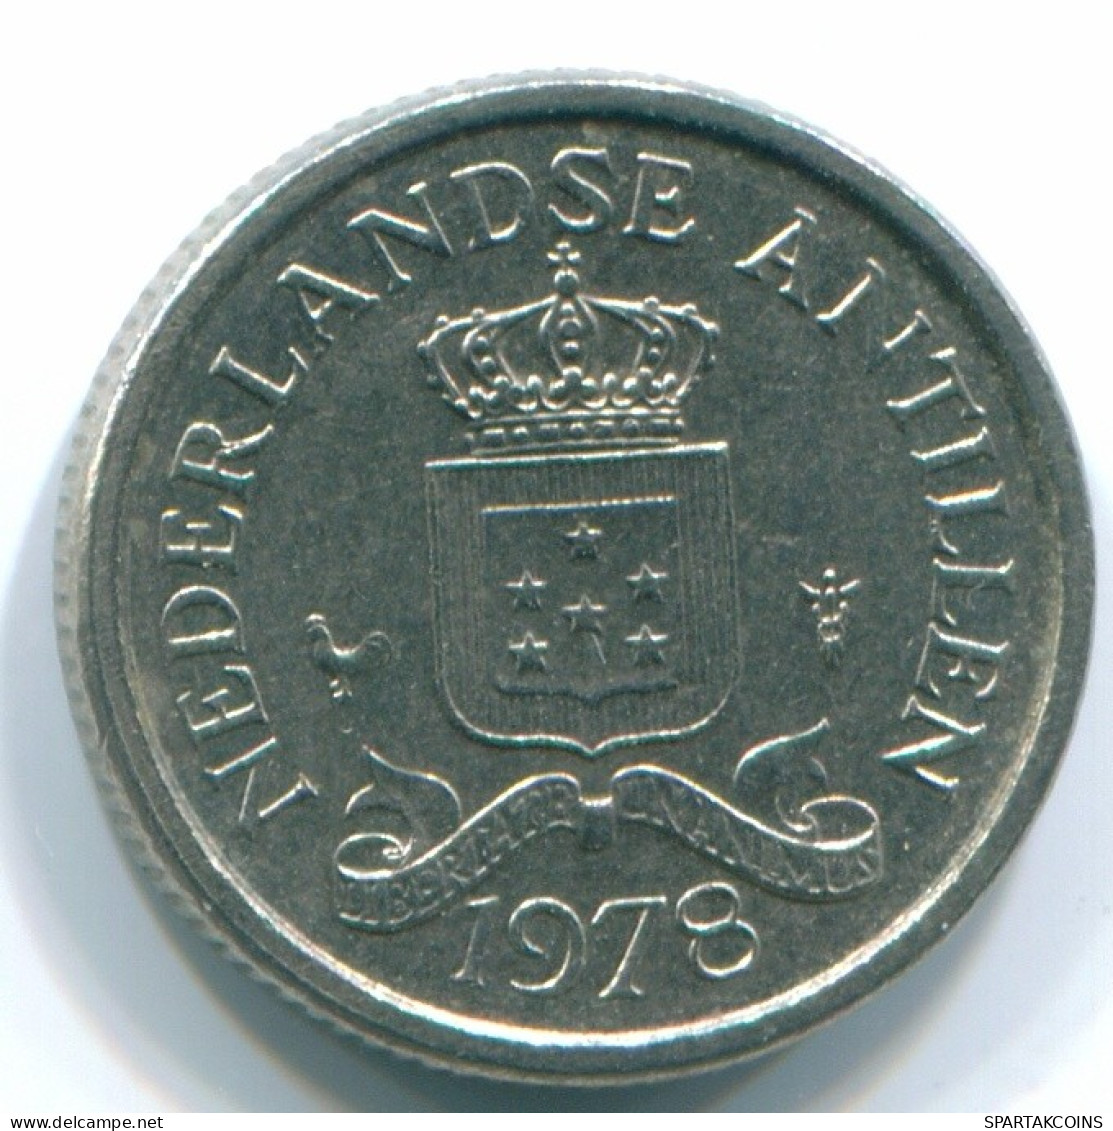 10 CENTS 1978 NETHERLANDS ANTILLES Nickel Colonial Coin #S13556.U.A - Niederländische Antillen